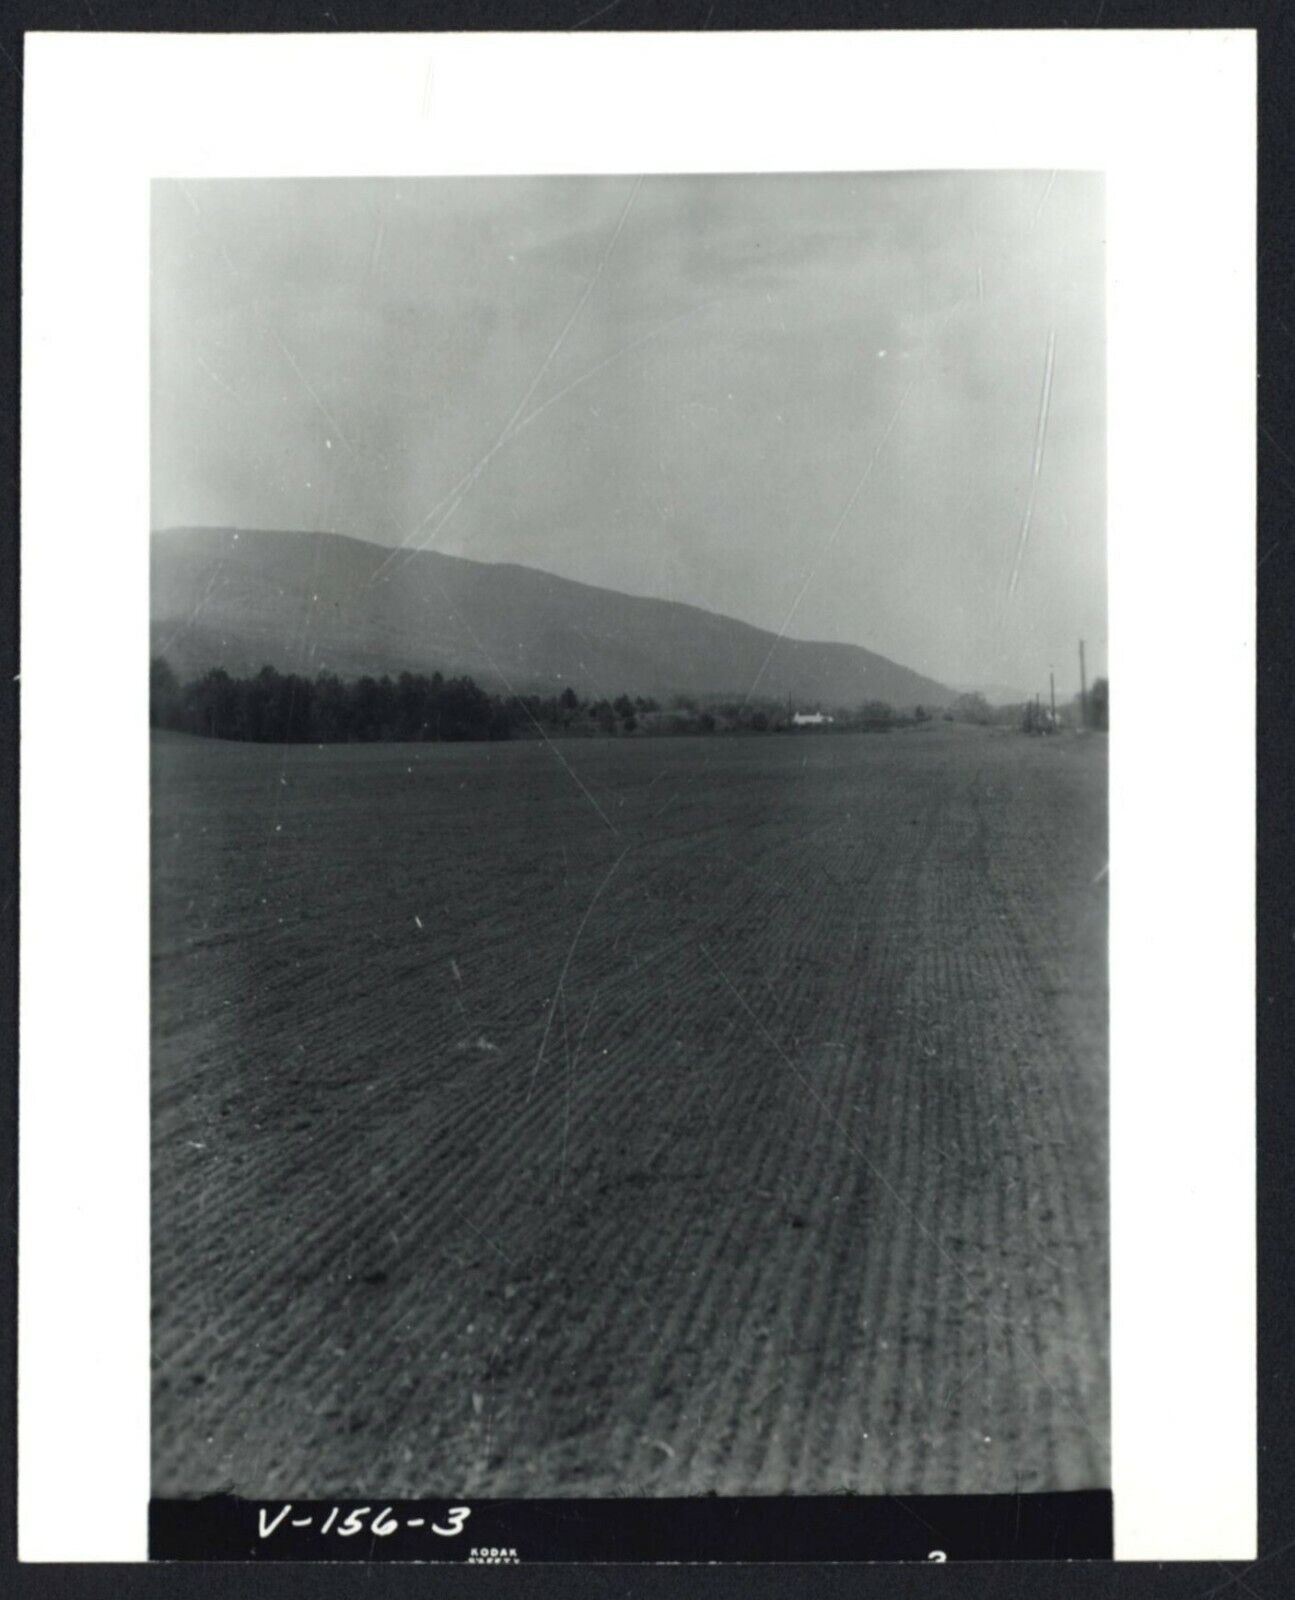 W. BANFILL LAND (Farm) - 1959 Vintage PHOTOGRAPH - Lemington, Vermont [SOWED]